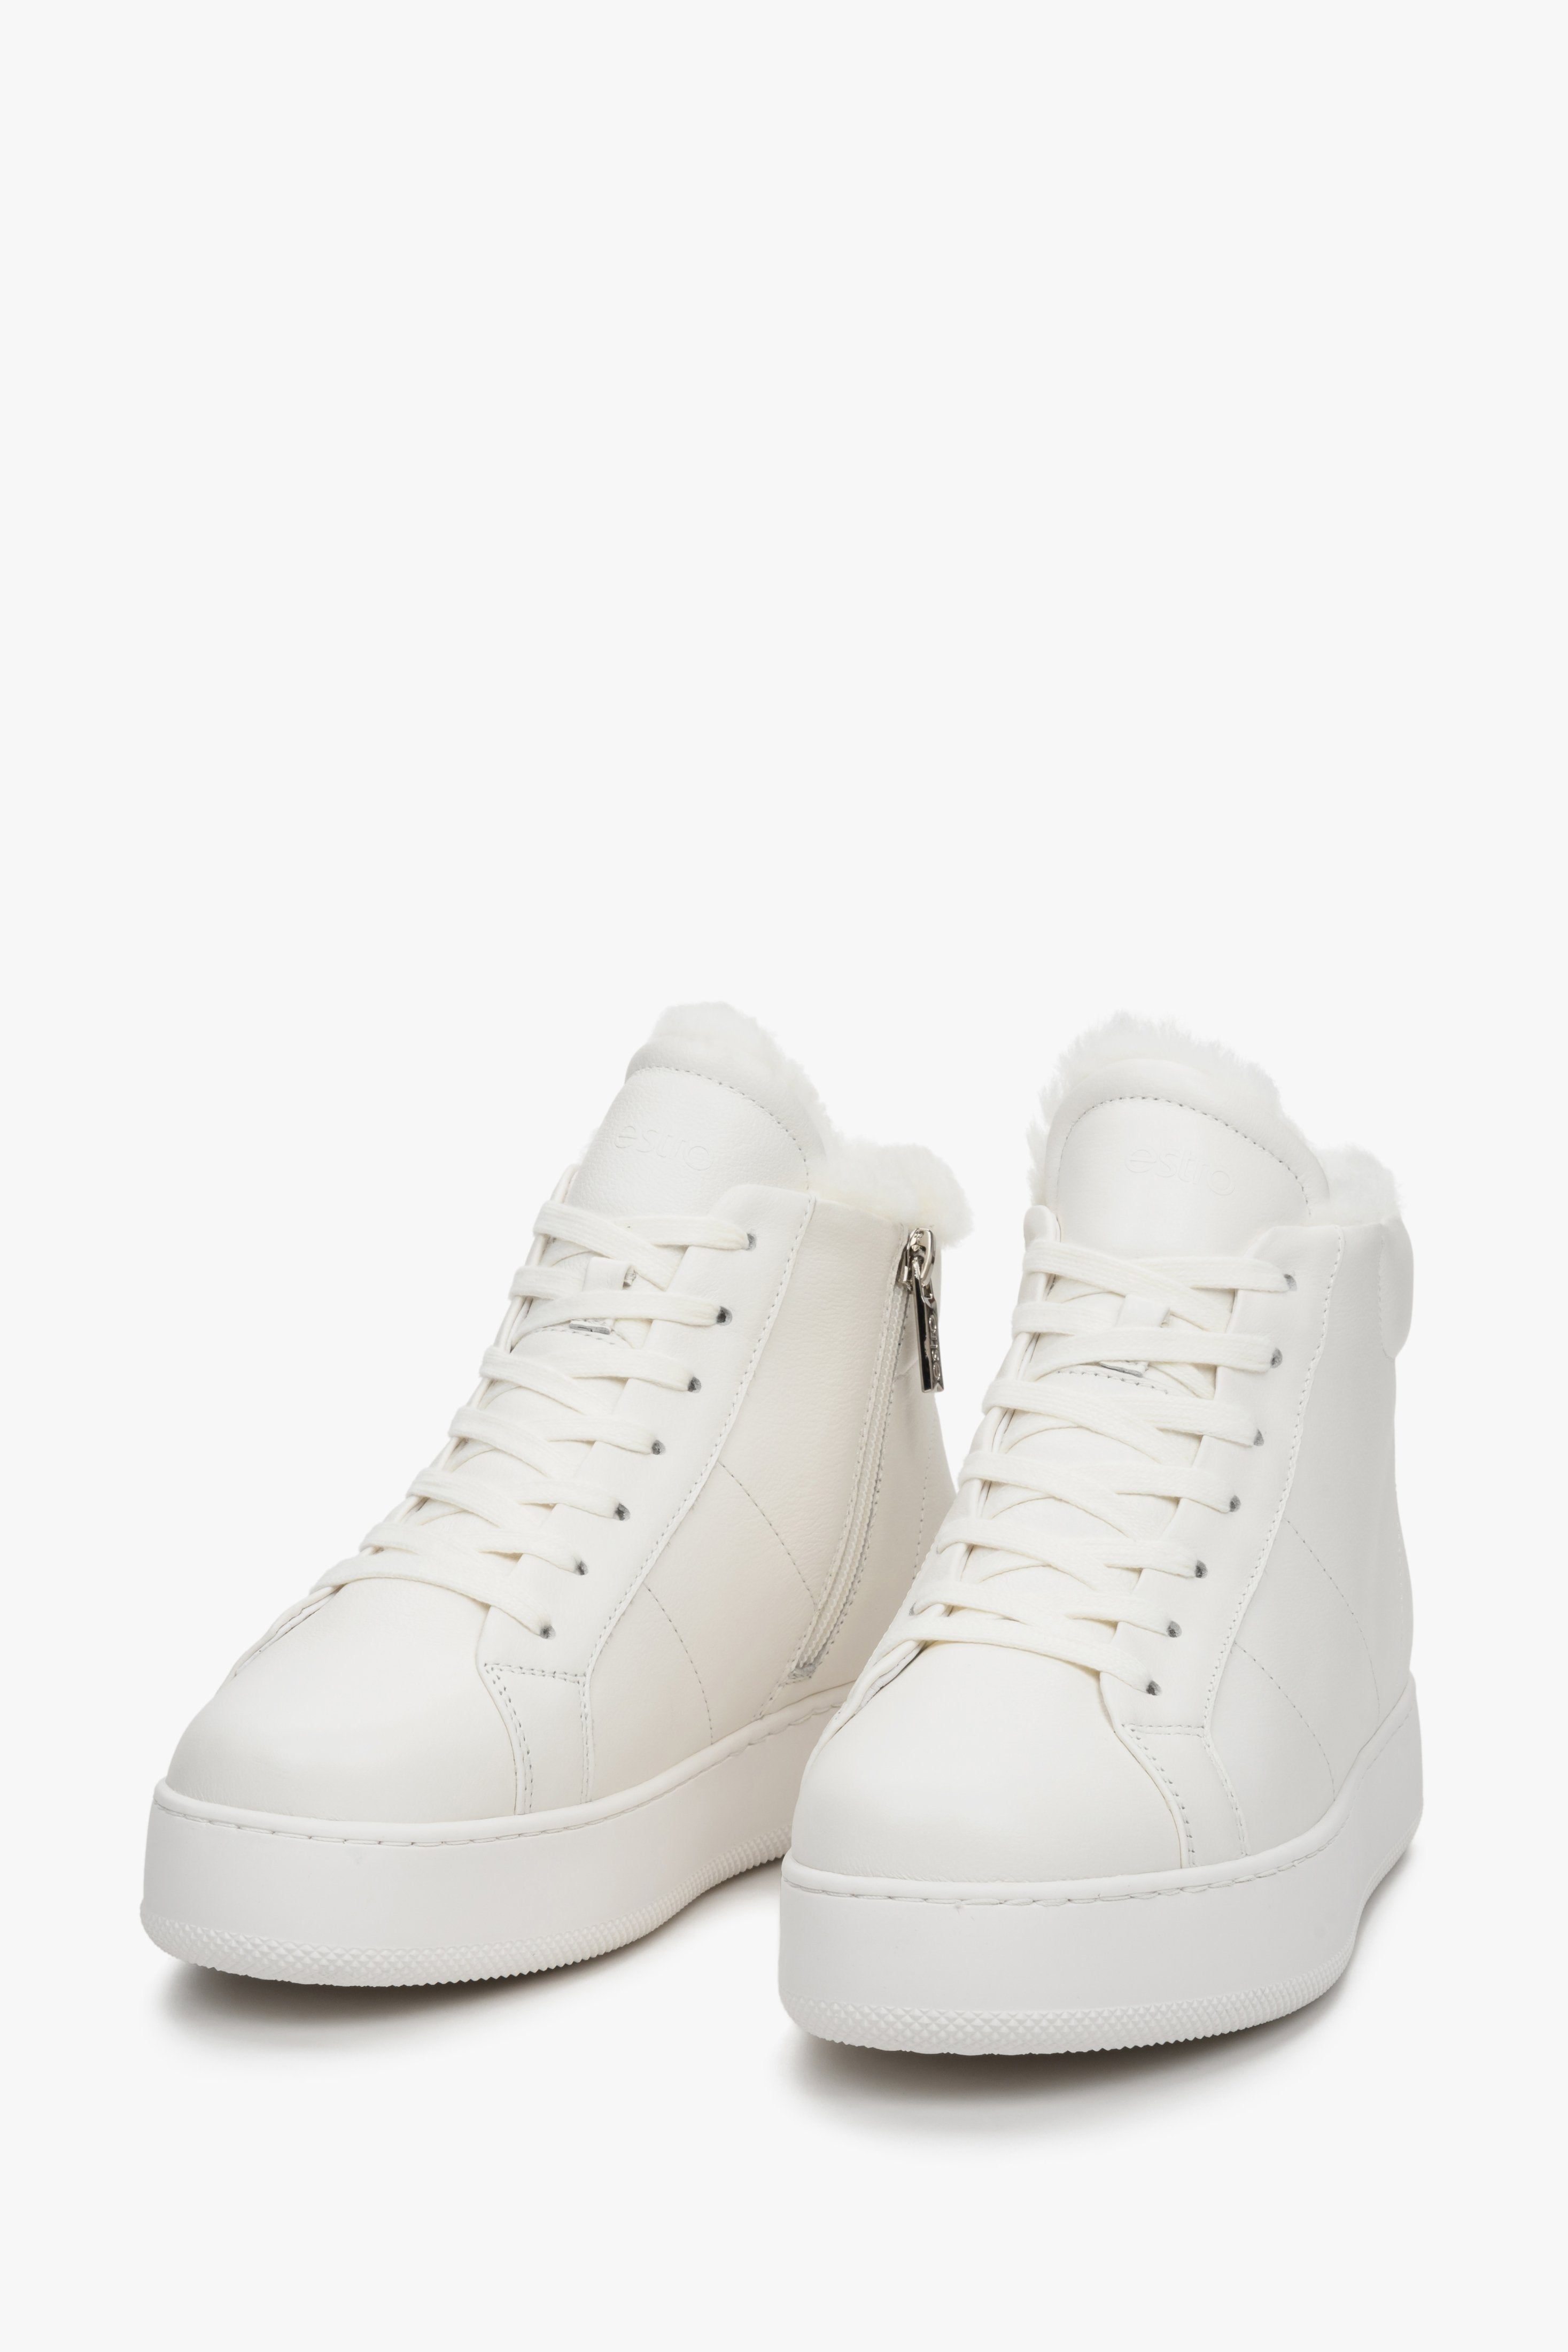 Białe, wysokie sneakersy damskie ze skóry naturalnej marki Estro - zbliżenie na przednią część buta.